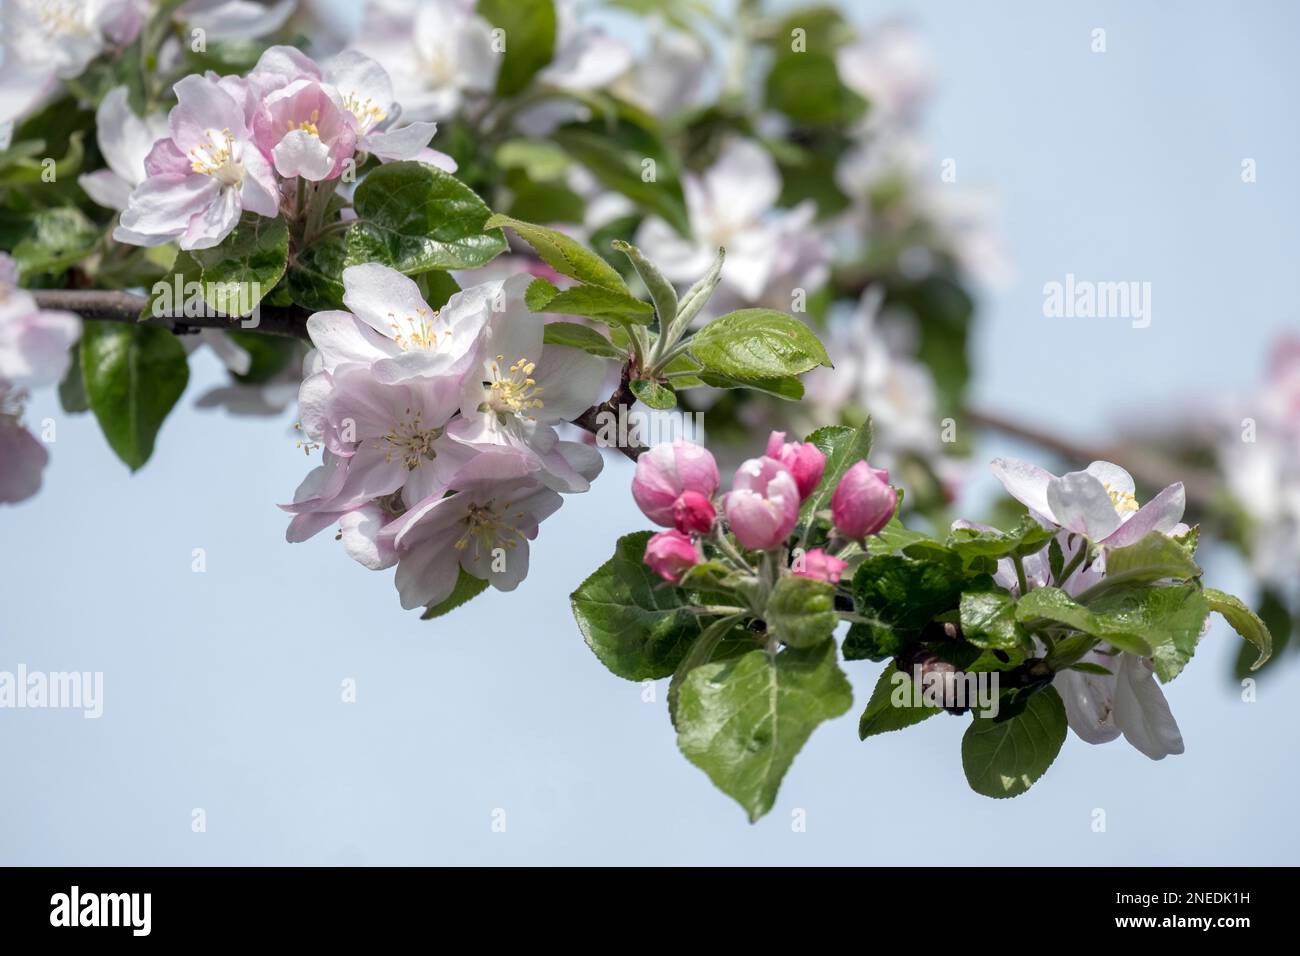 Apple tree blossom Stock Photo